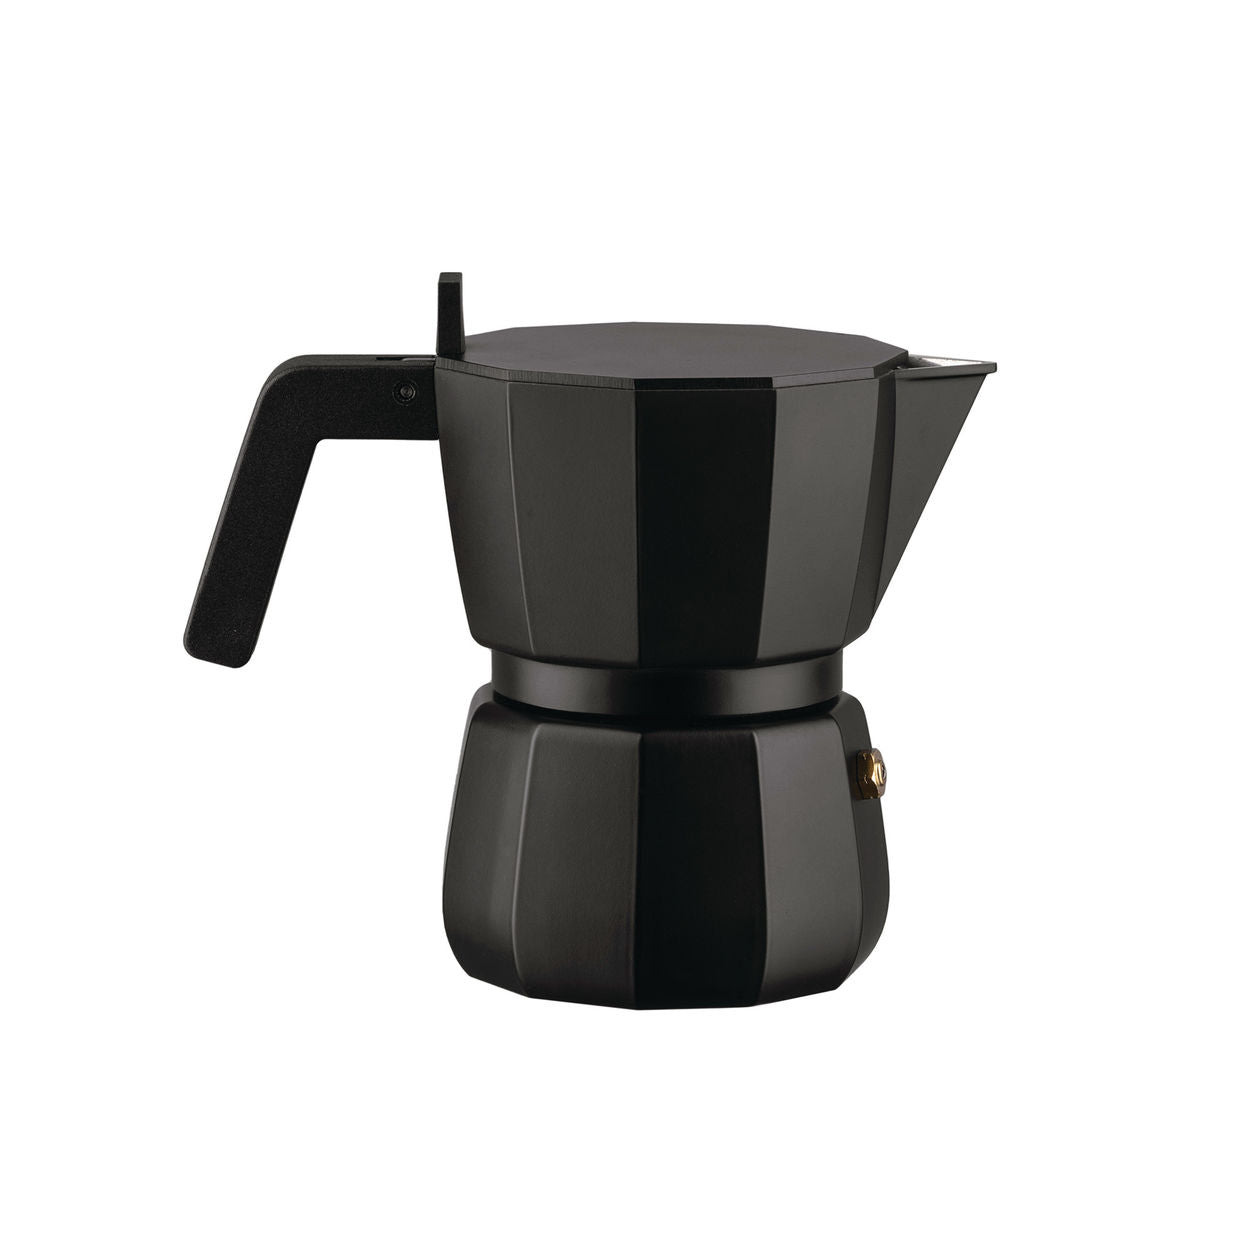 Alessi Moka Espresso Coffee Maker Black, 3 tazze